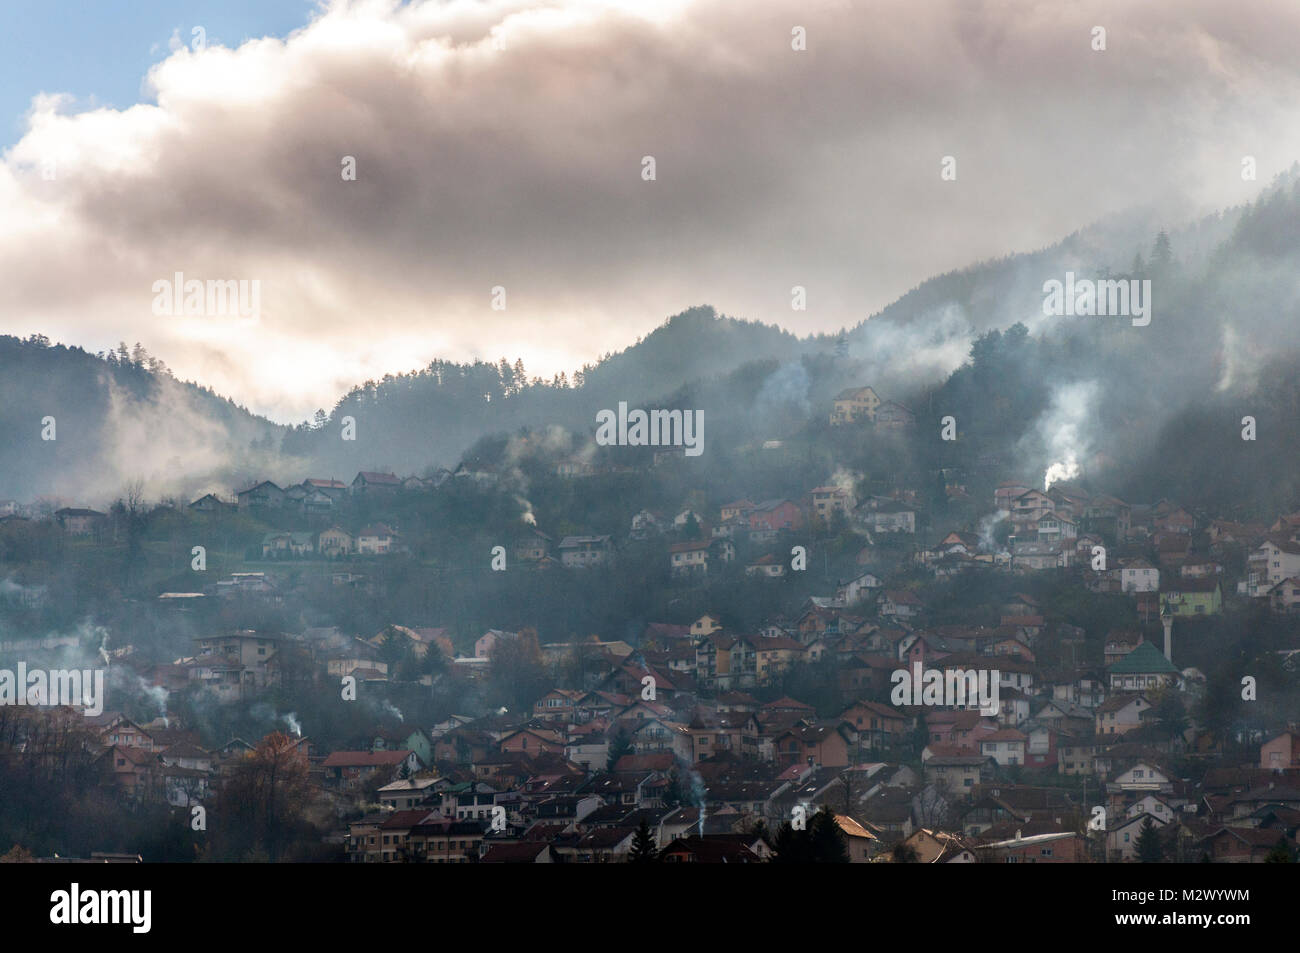 Early morning light à Sarajevo, Bosnie Herzégovine, l'ex-Yougoslavie la fumée des incendies dans les collines environnantes Banque D'Images